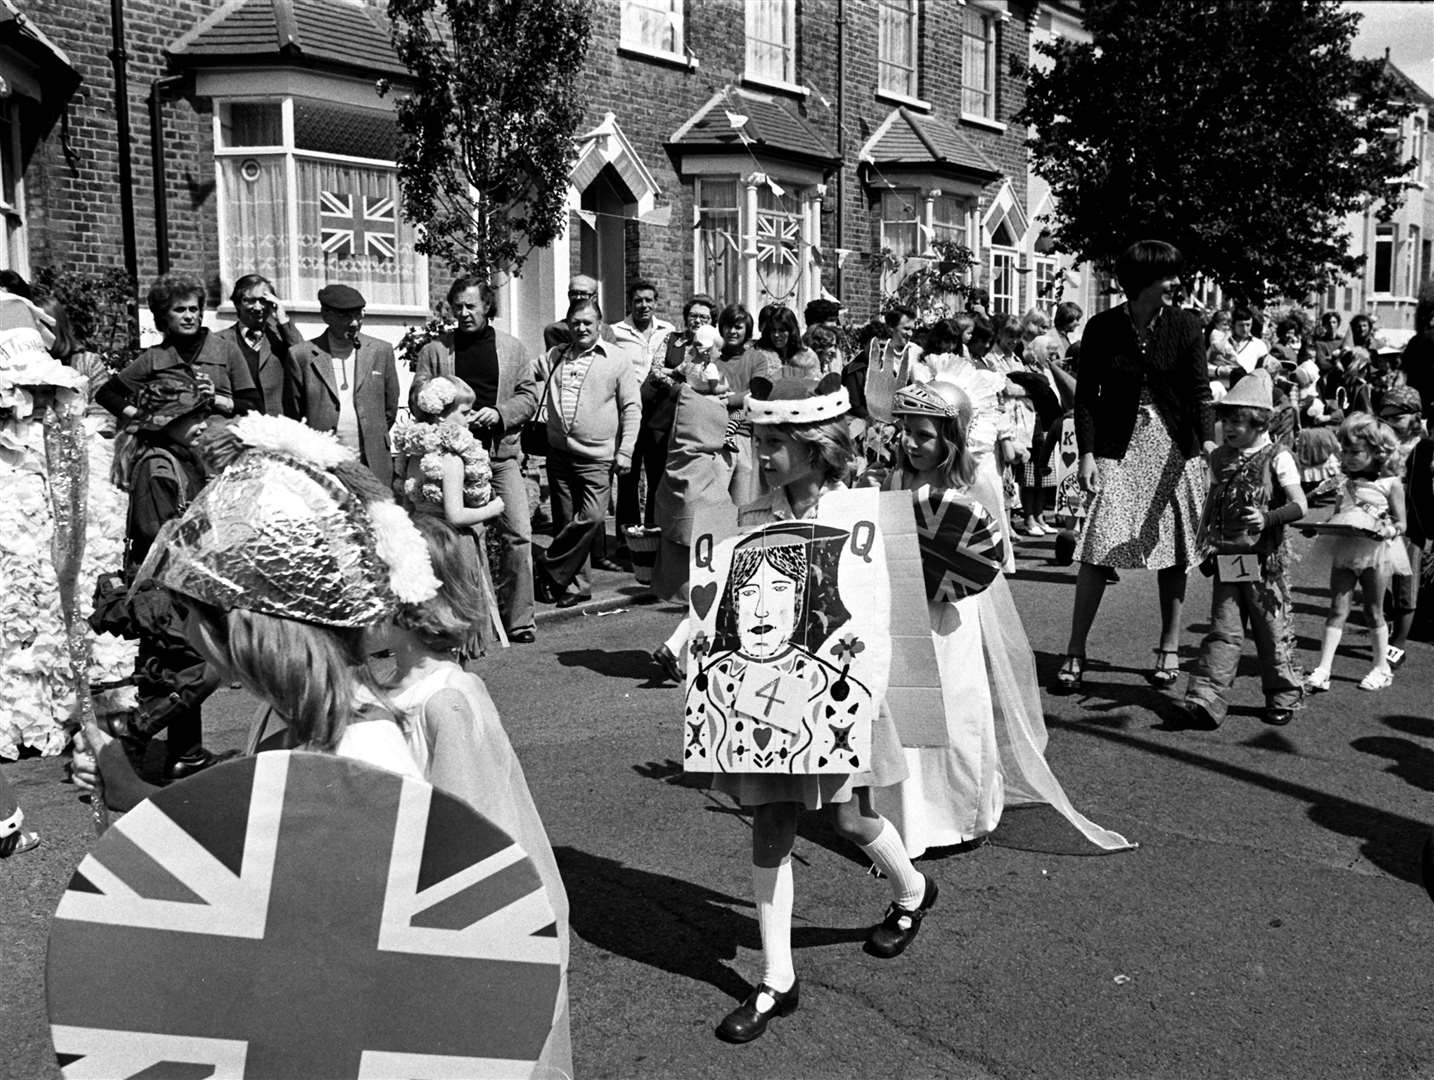 A Silver Jubilee street party in Woodford Bridge, Essex in 1977 (PA)